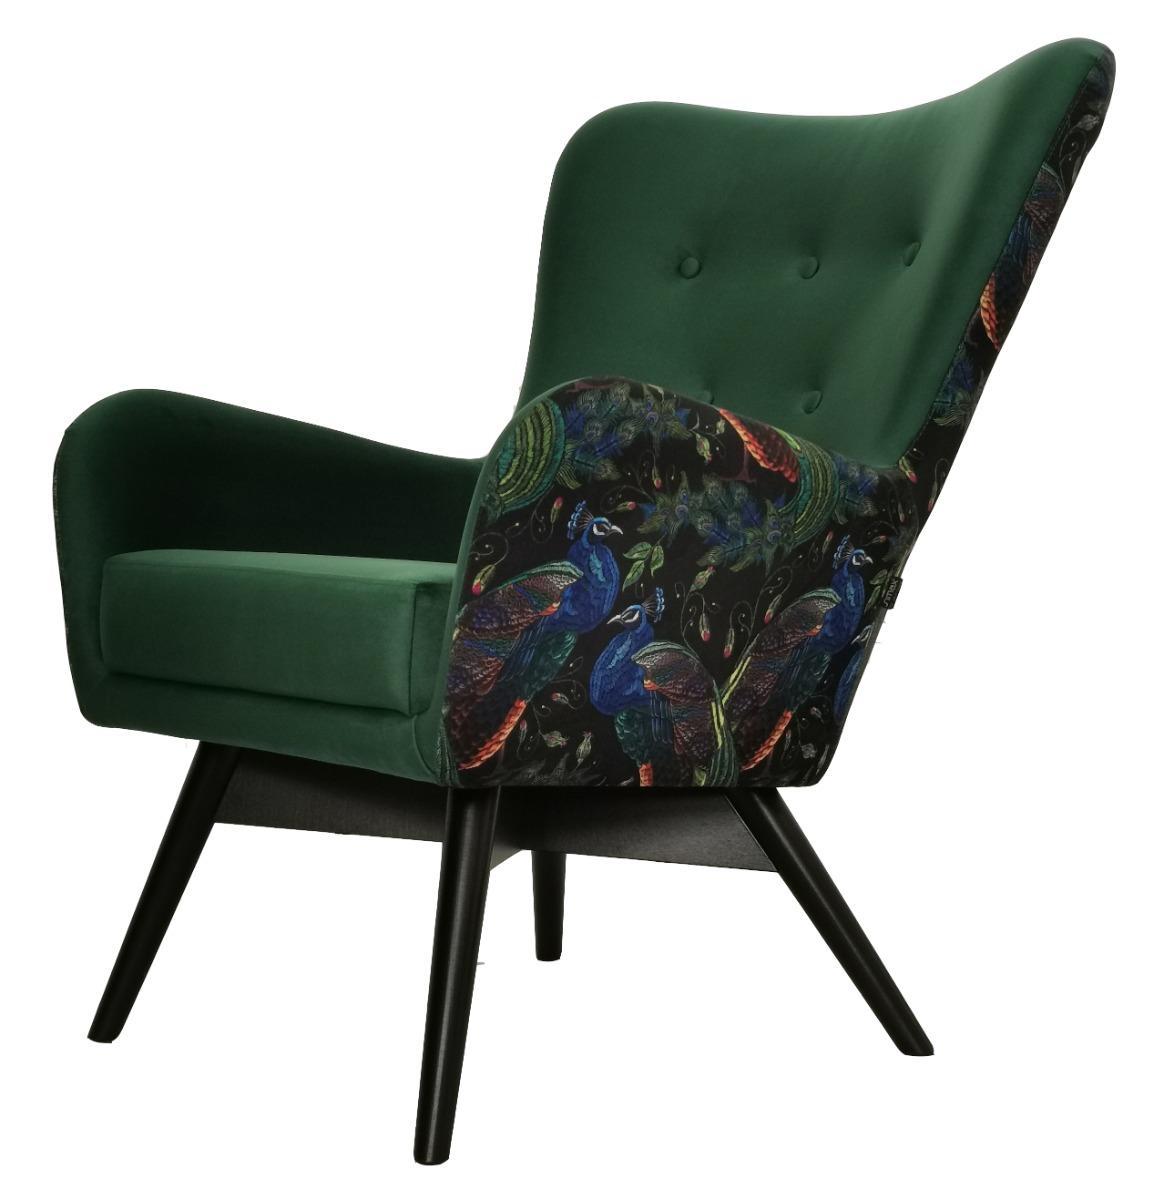 Fotel skandynawski GRANDE 80x93x80 cm zielony we wzory pawie do salonu nr. 1